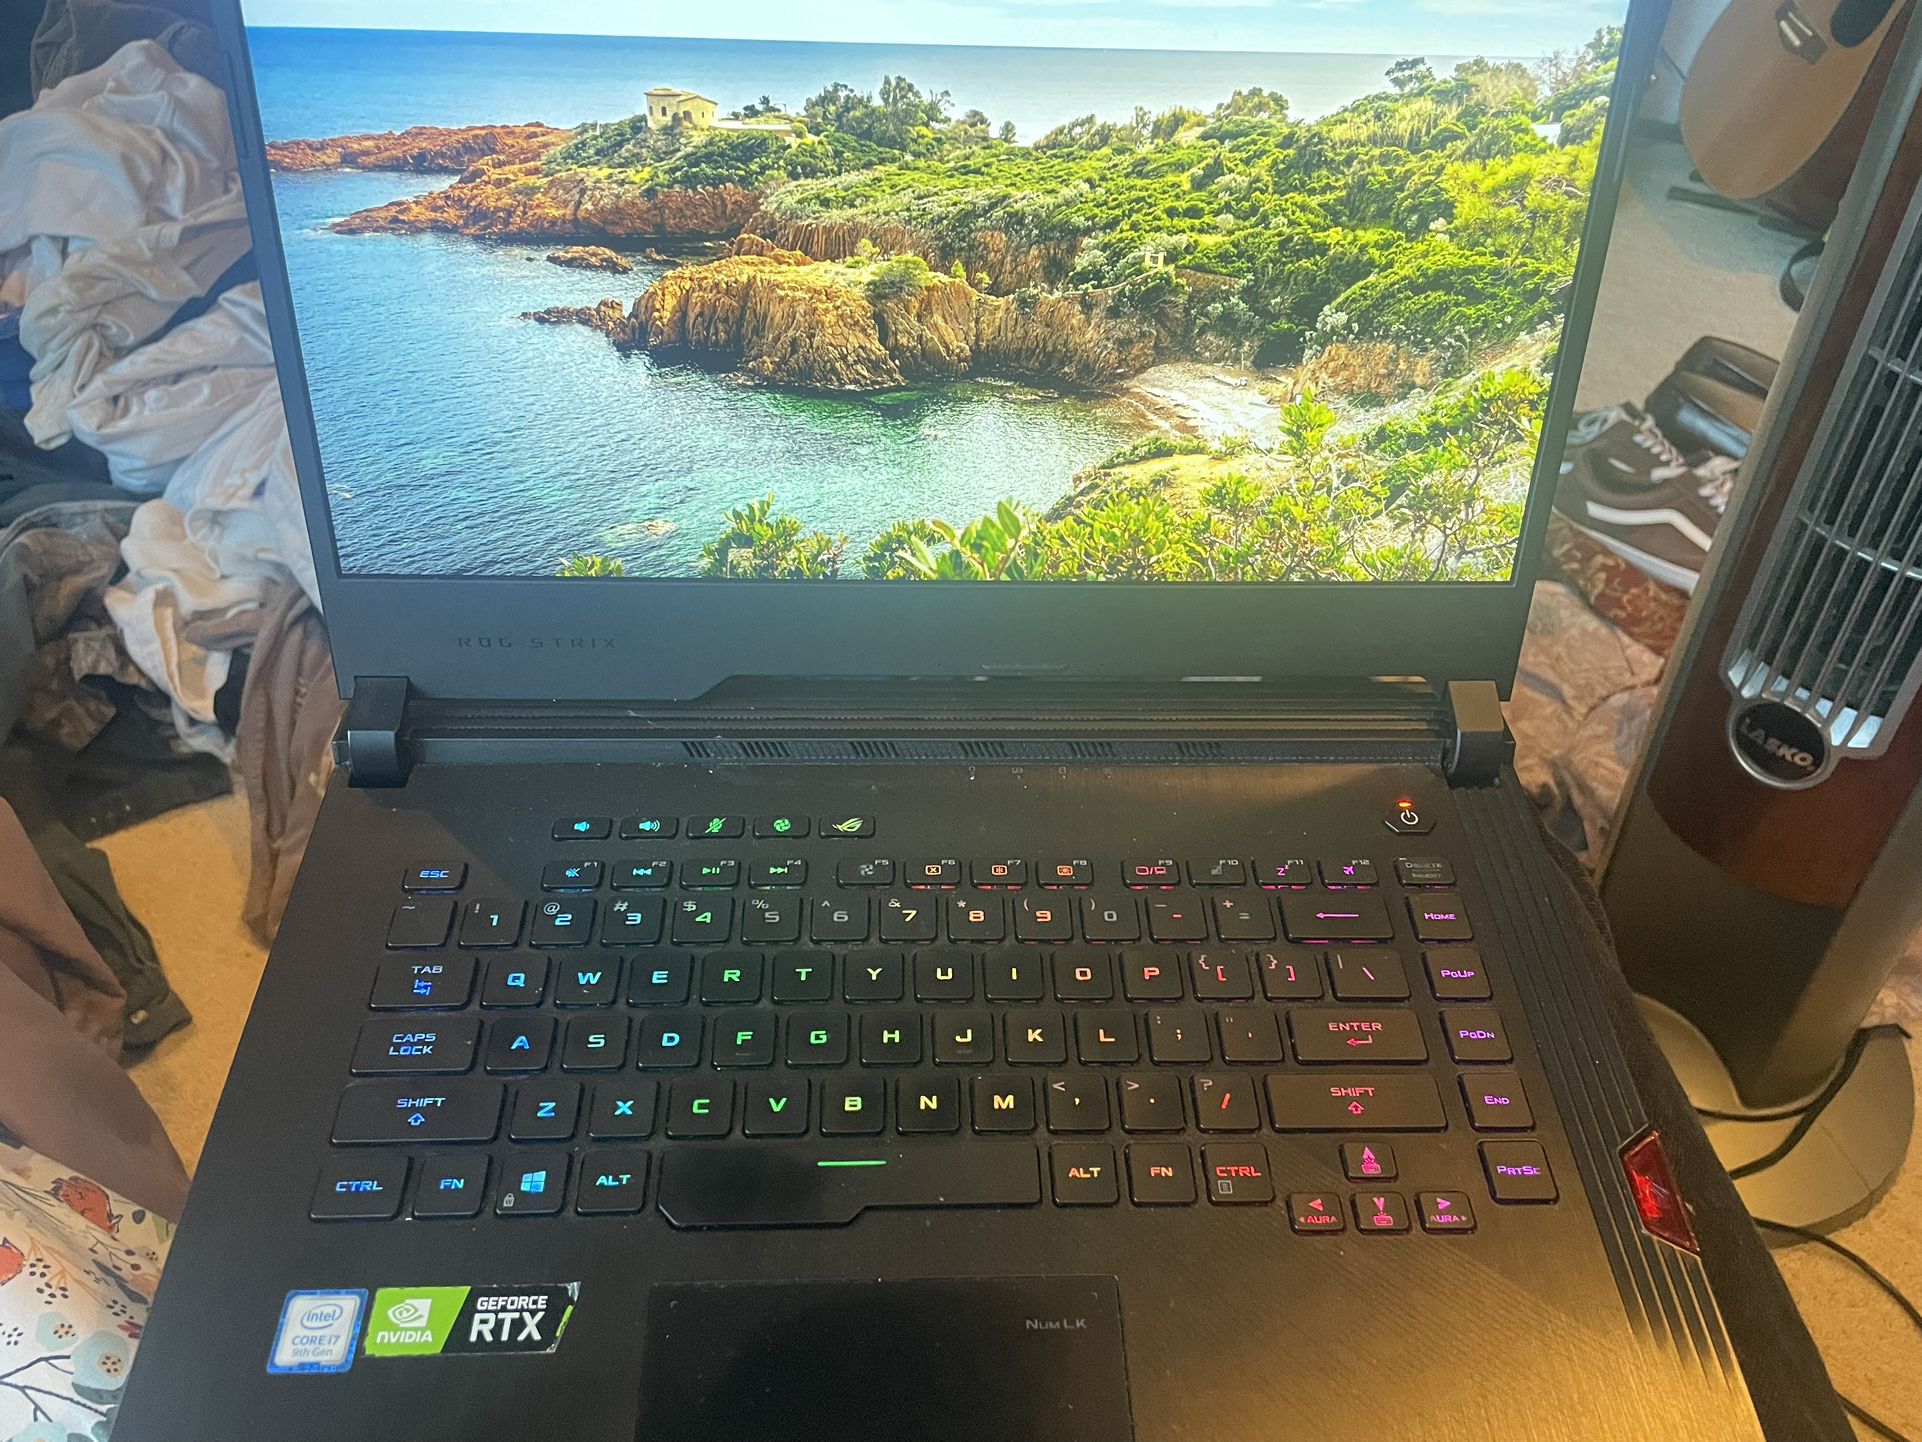 Asus Rog Gaming Laptop Rtx 2070 G531gw